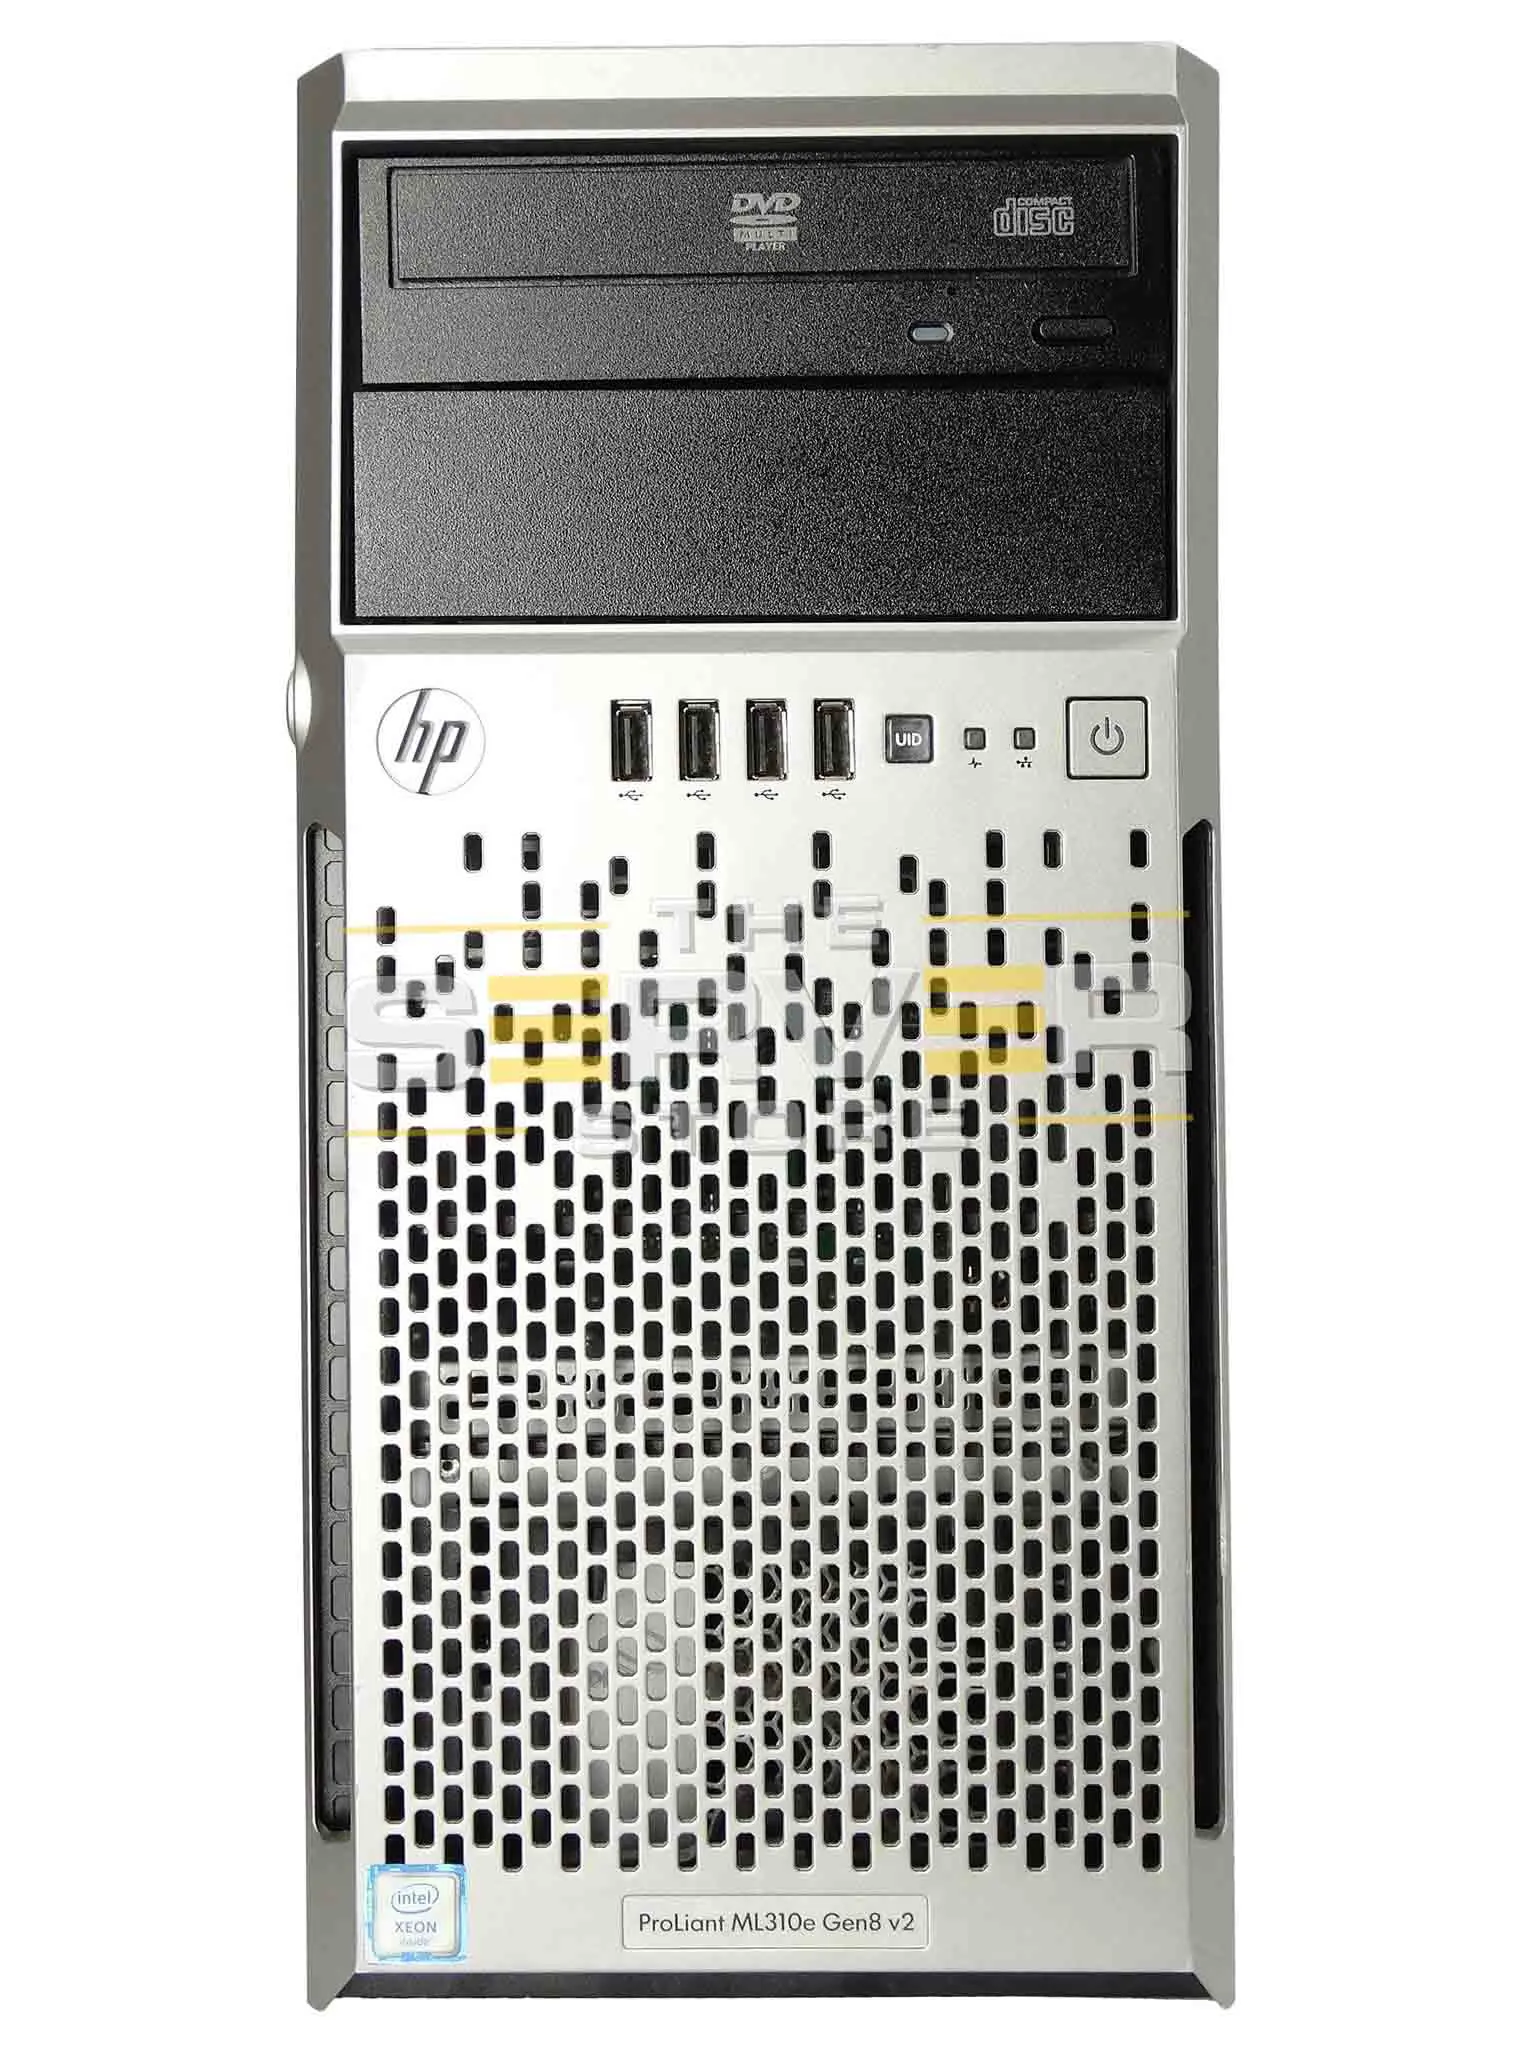 hewlett packard proliant ml310e gen8v2 tower - How much RAM can HP ProLiant ML310e Gen8 support